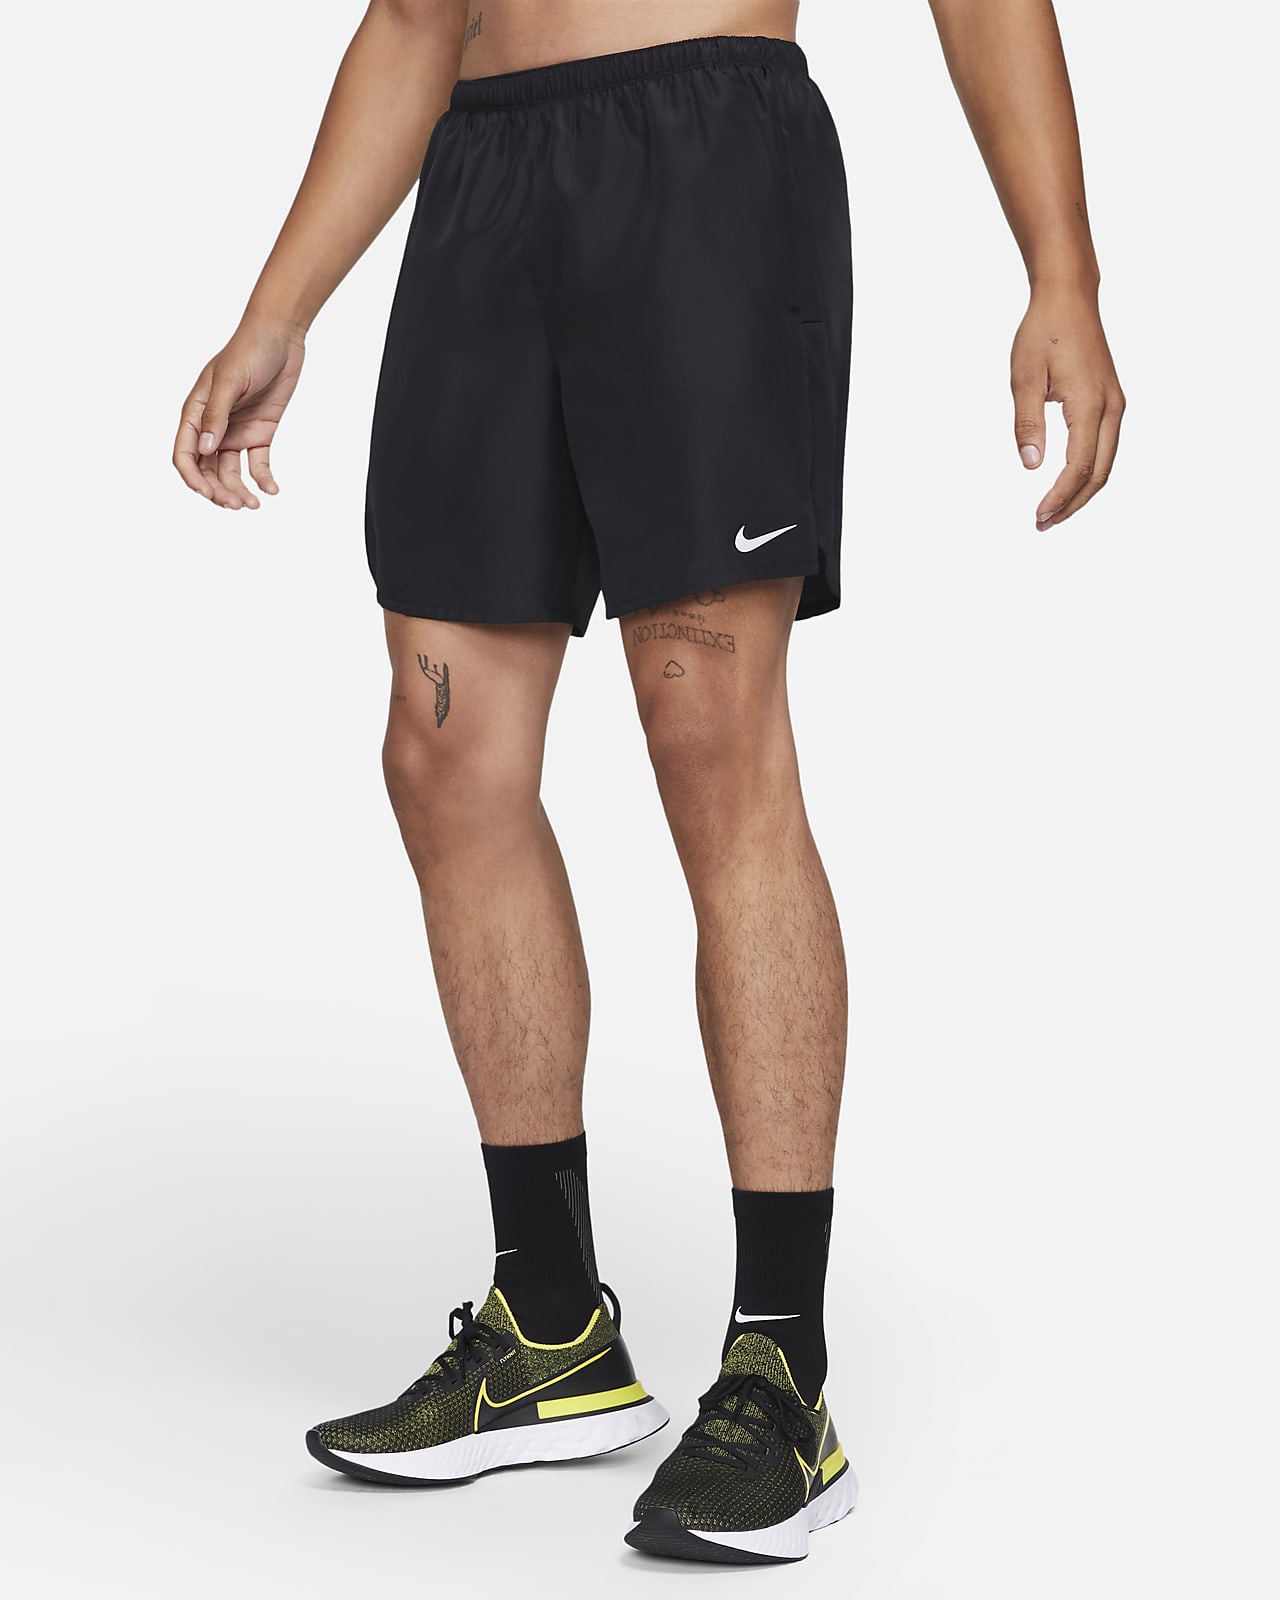 Pánské 18cm běžecké kraťasy Nike Challenger s všitými slipy